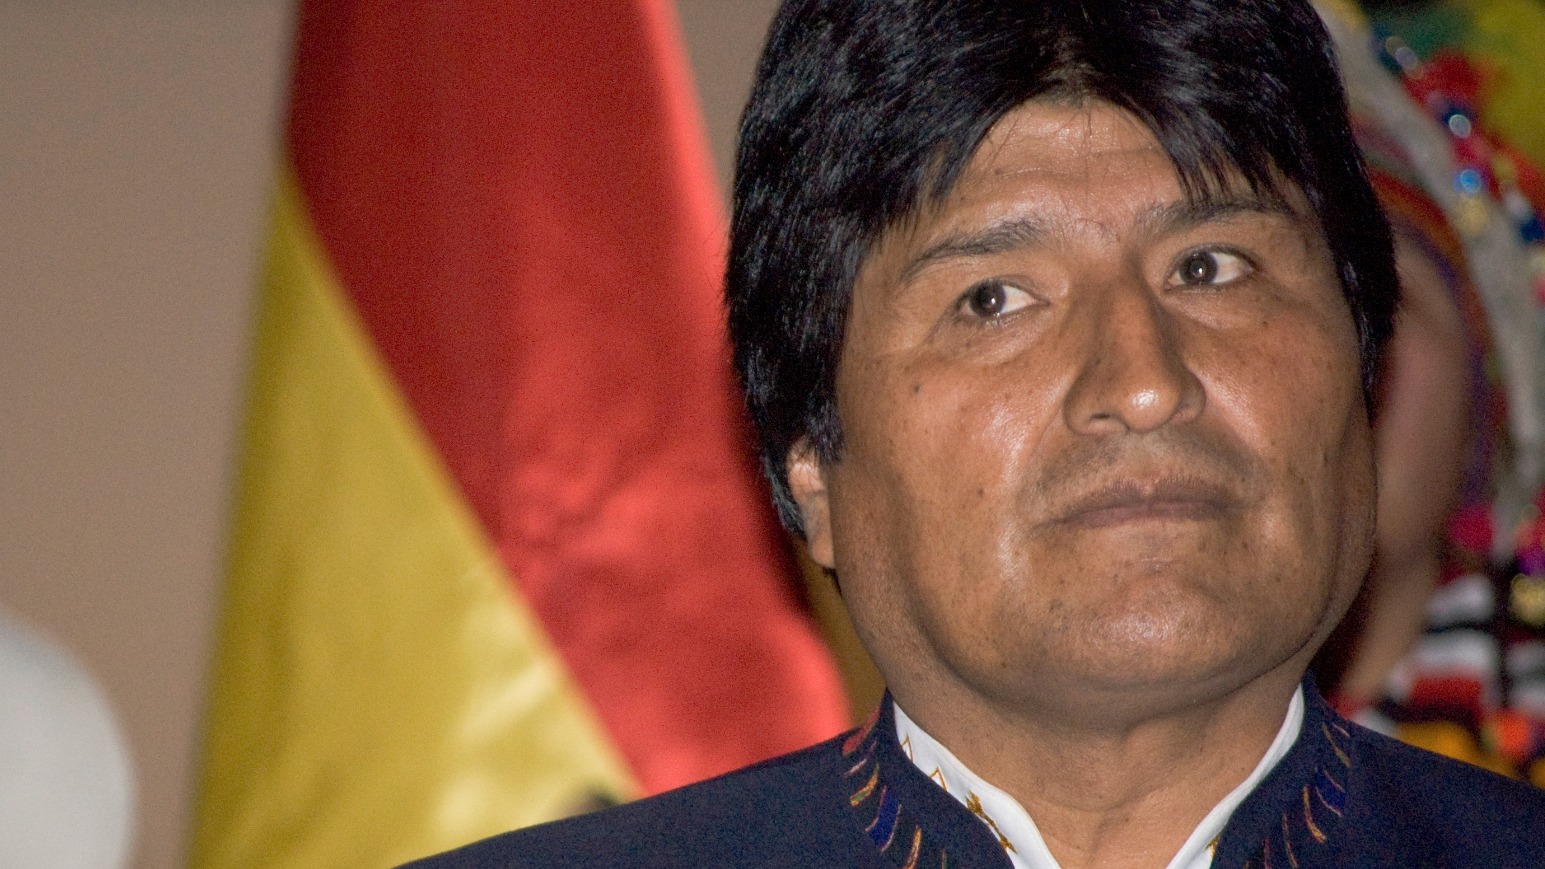 Le président bolivien, Evo Morales, et le pape se sont rencontrés pour la 5e fois. | © Sébastien Baryli/Flickr/CC BY 2.0